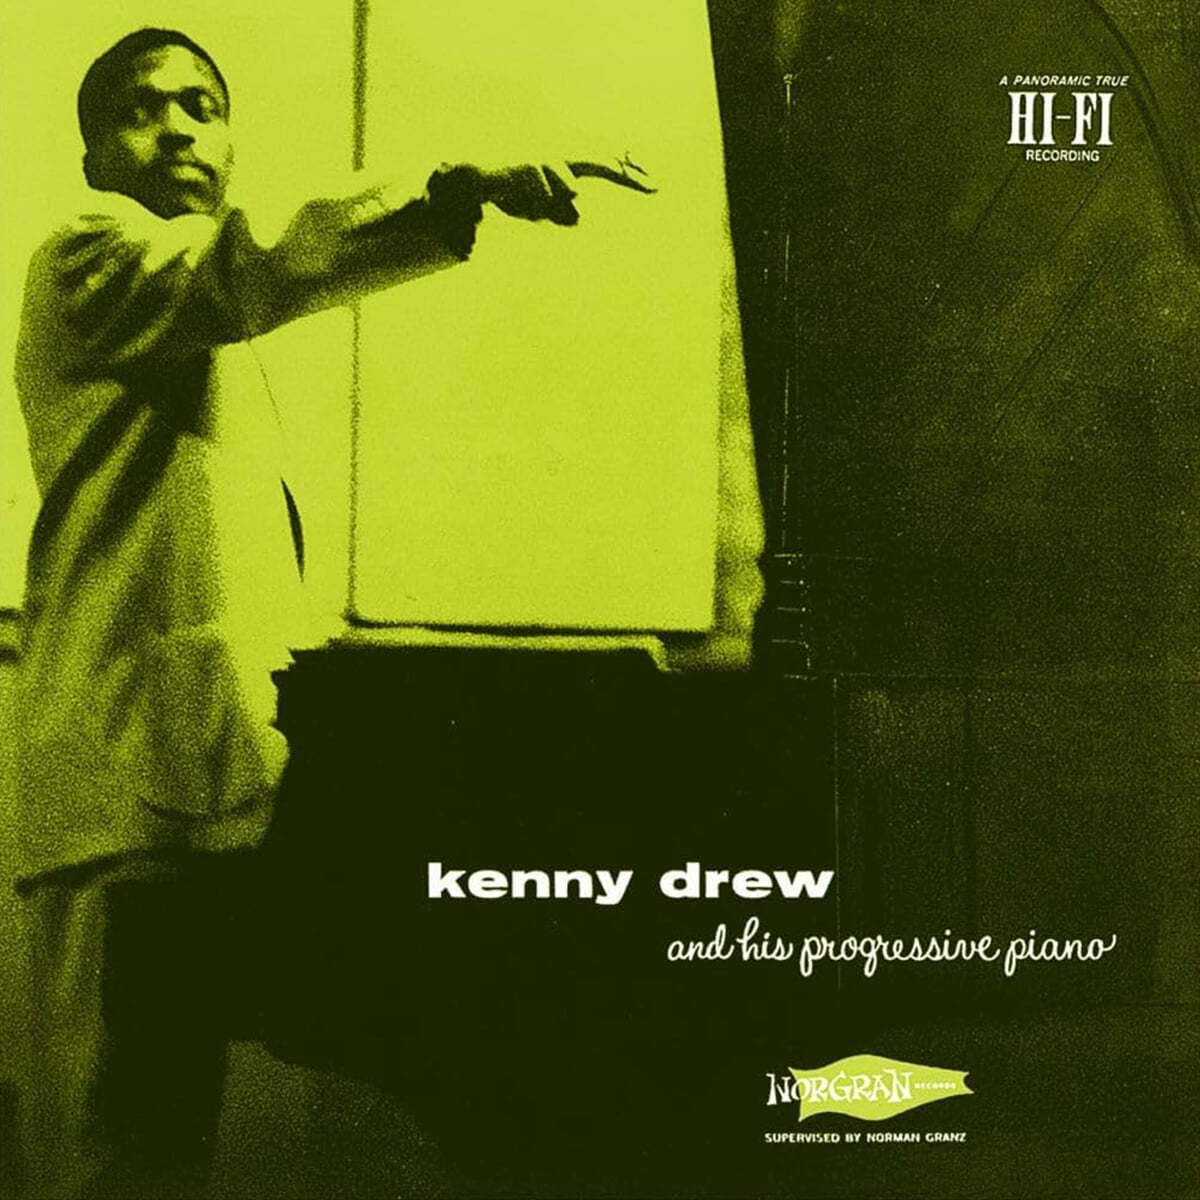 Kenny Drew (케니 드류) - his progressive piano